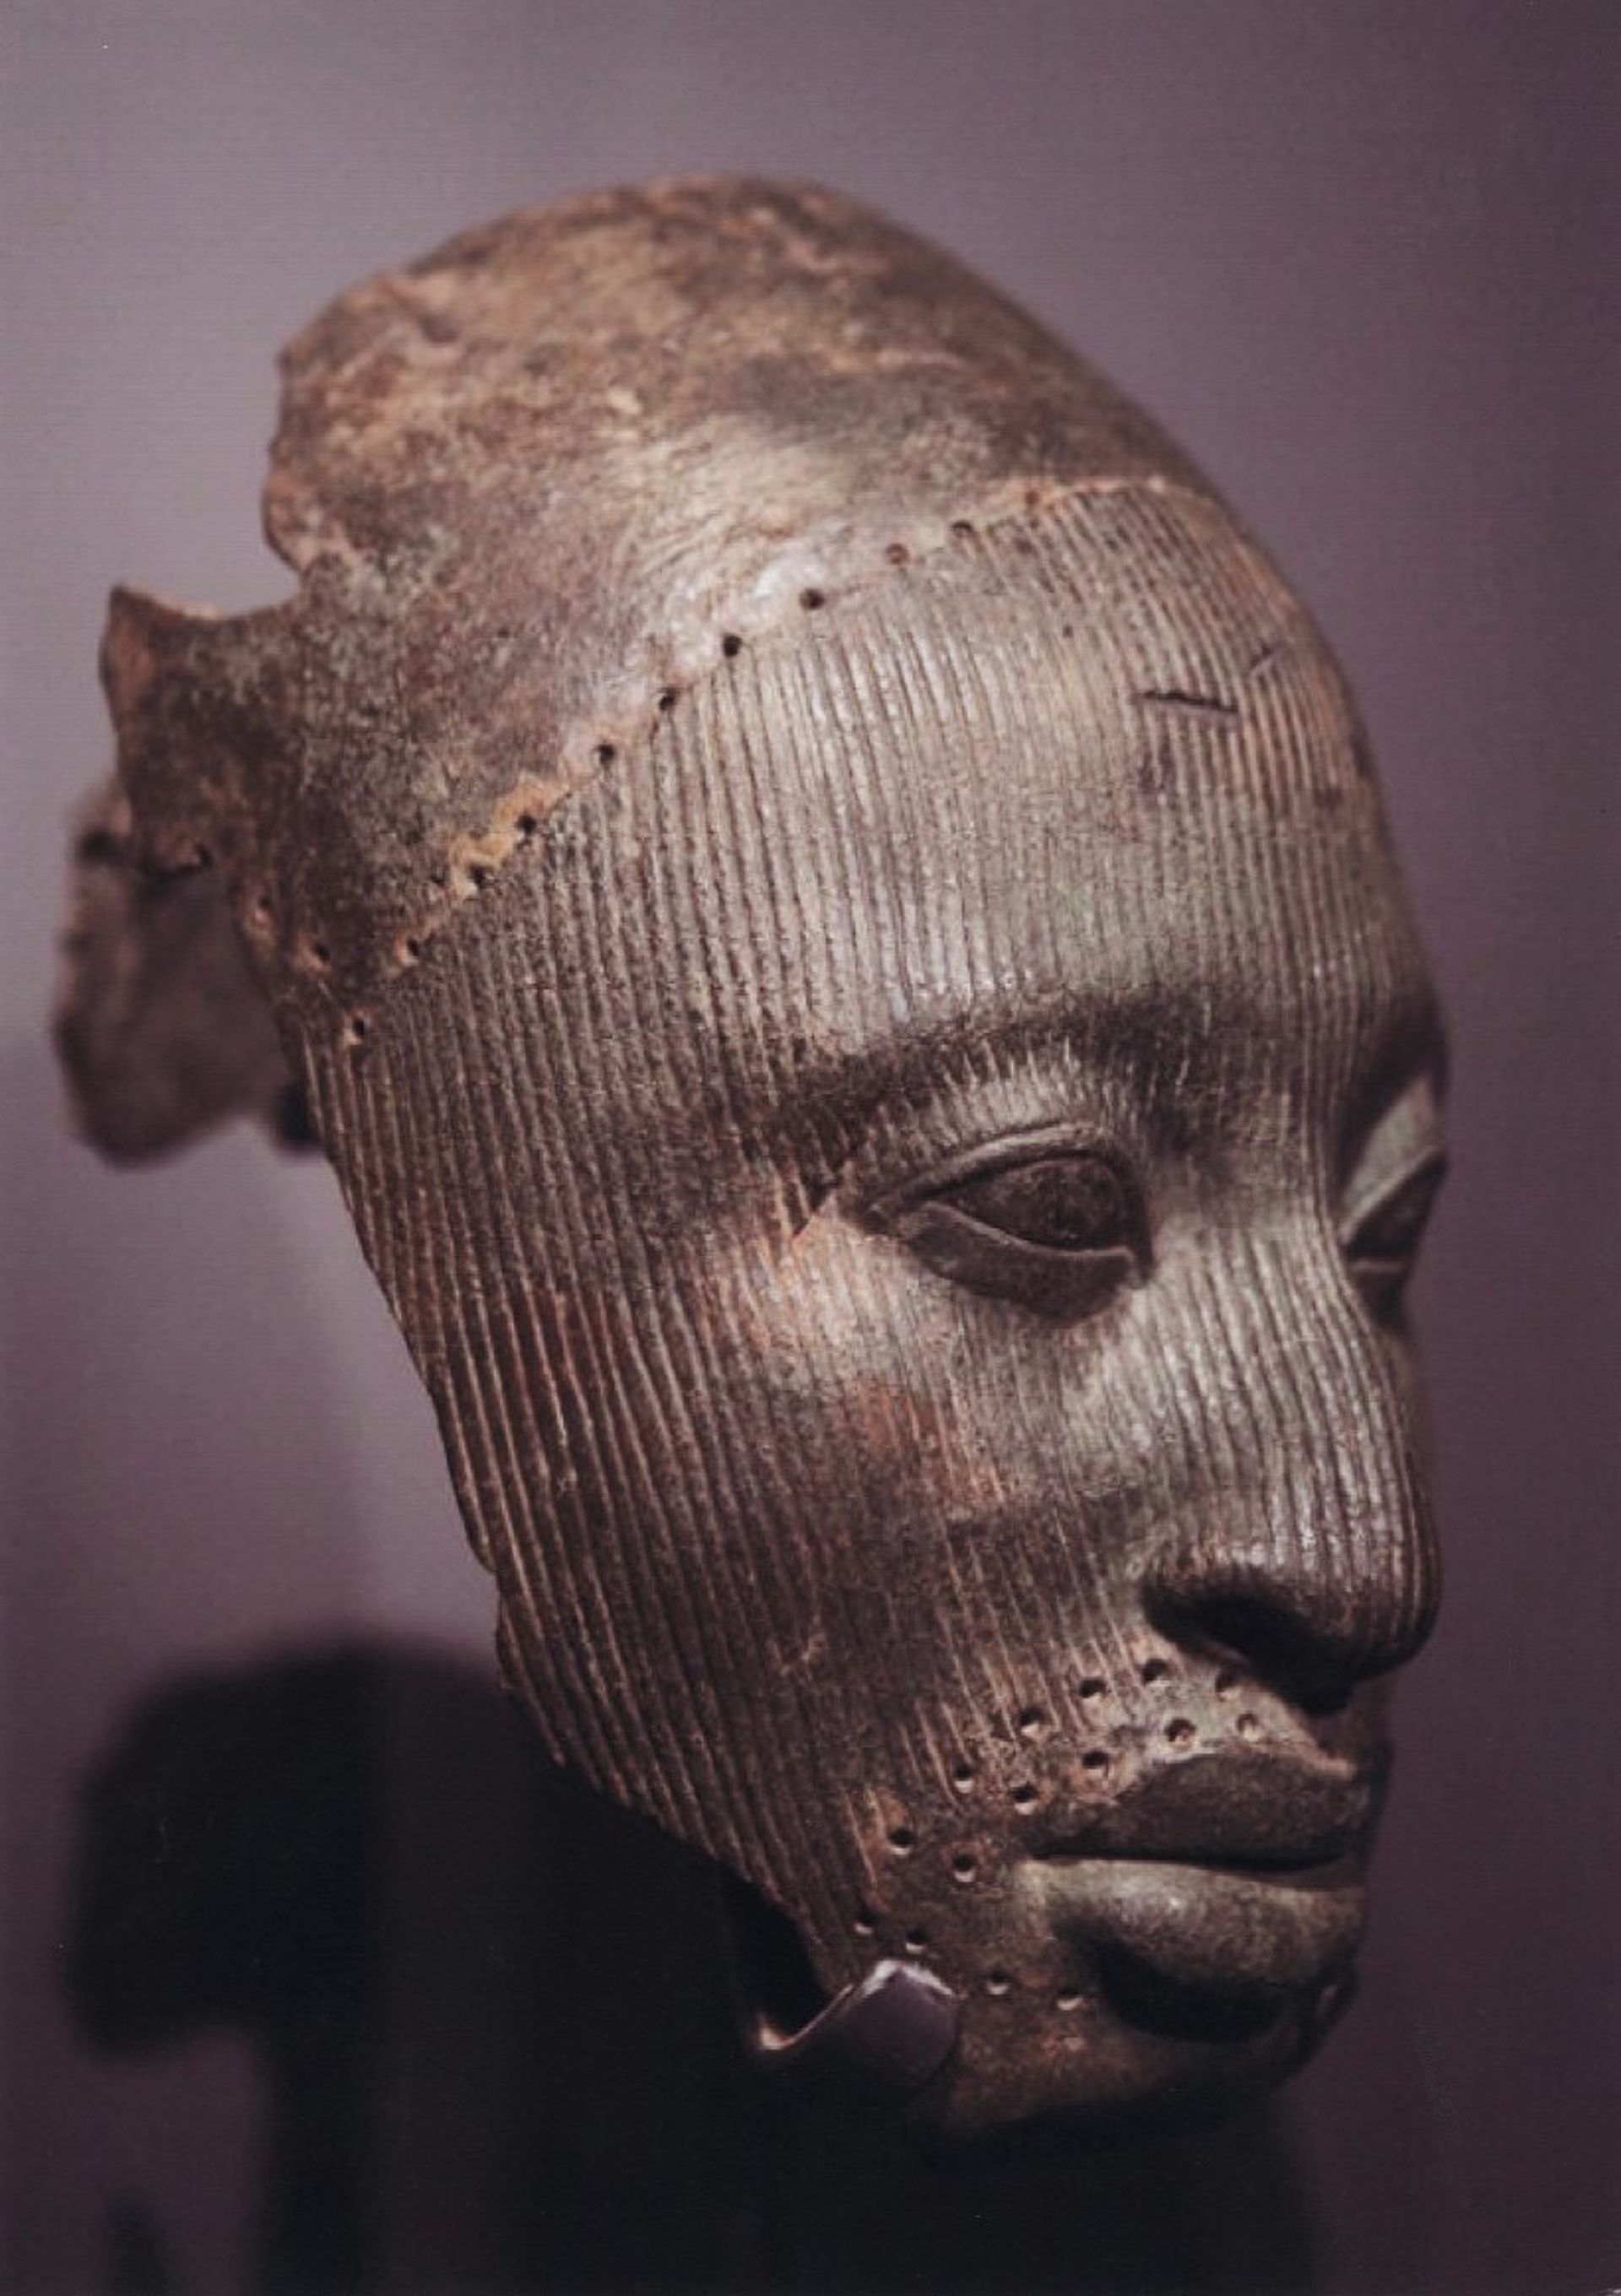 מסכת ראש של ממלכת Ife מהמאה ה-14, הוחזרה לניגריה 

באדיבות מוזיאון המטרופוליטן לאמנות


